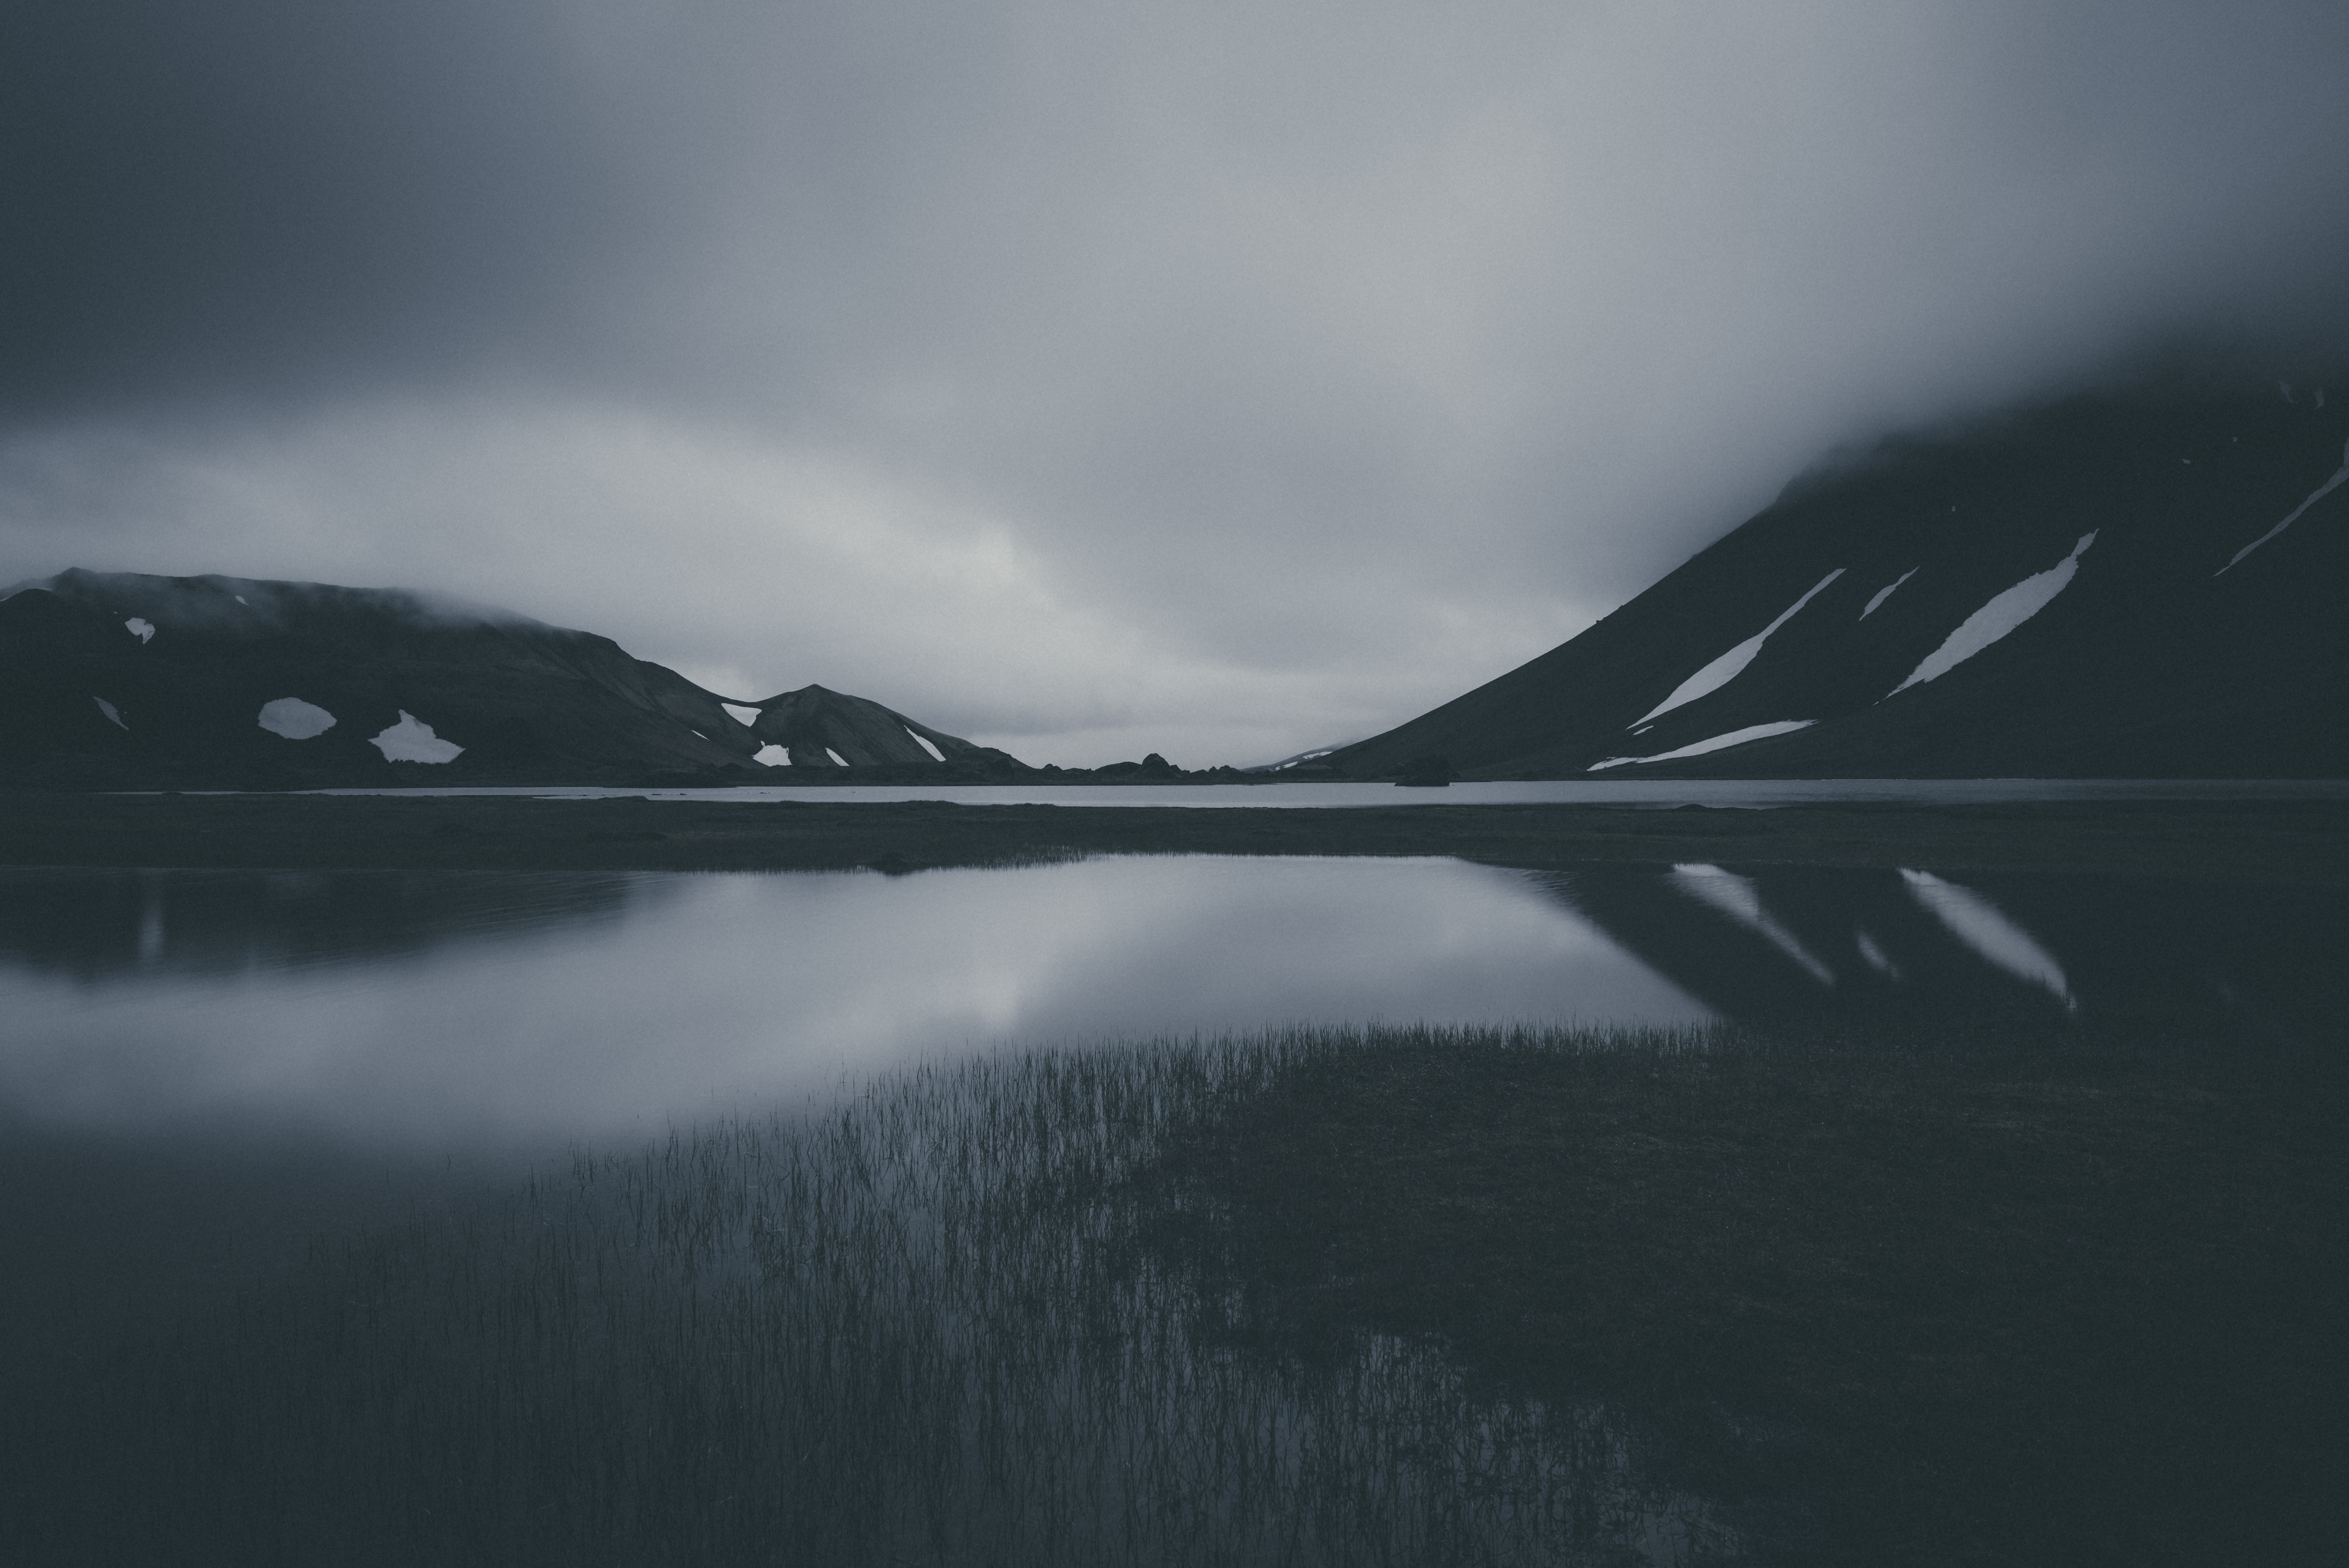 bw, gloomy, dark, mountains, lake, chb, gloomily Full HD